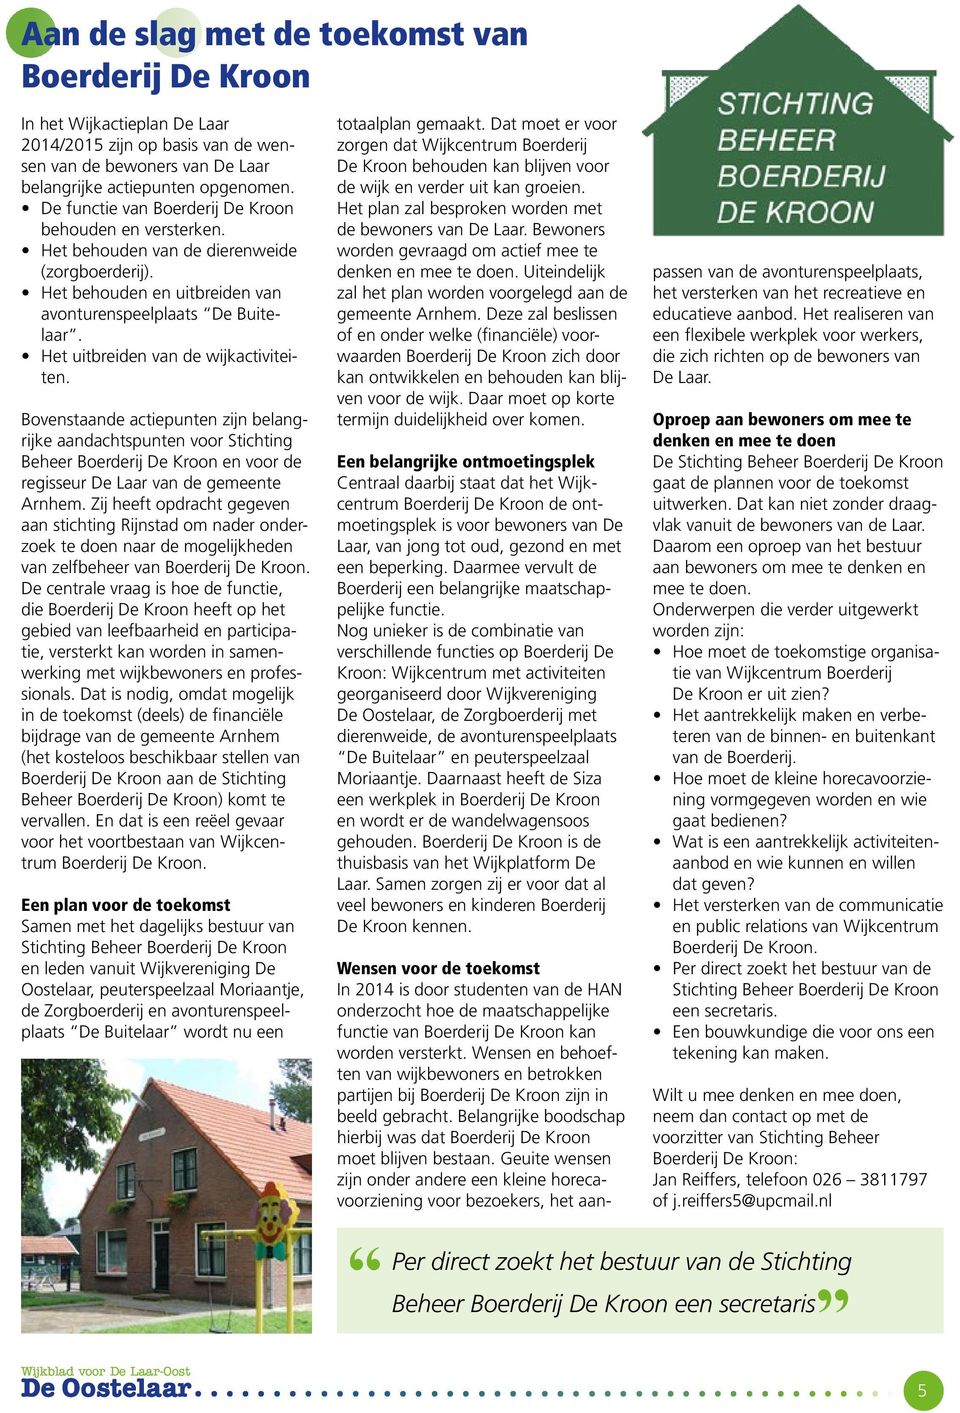 Het uitbreiden van de wijkactiviteiten. Bovenstaande actiepunten zijn belangrijke aandachtspunten voor Stichting Beheer Boerderij De Kroon en voor de regisseur De Laar van de gemeente Arnhem.